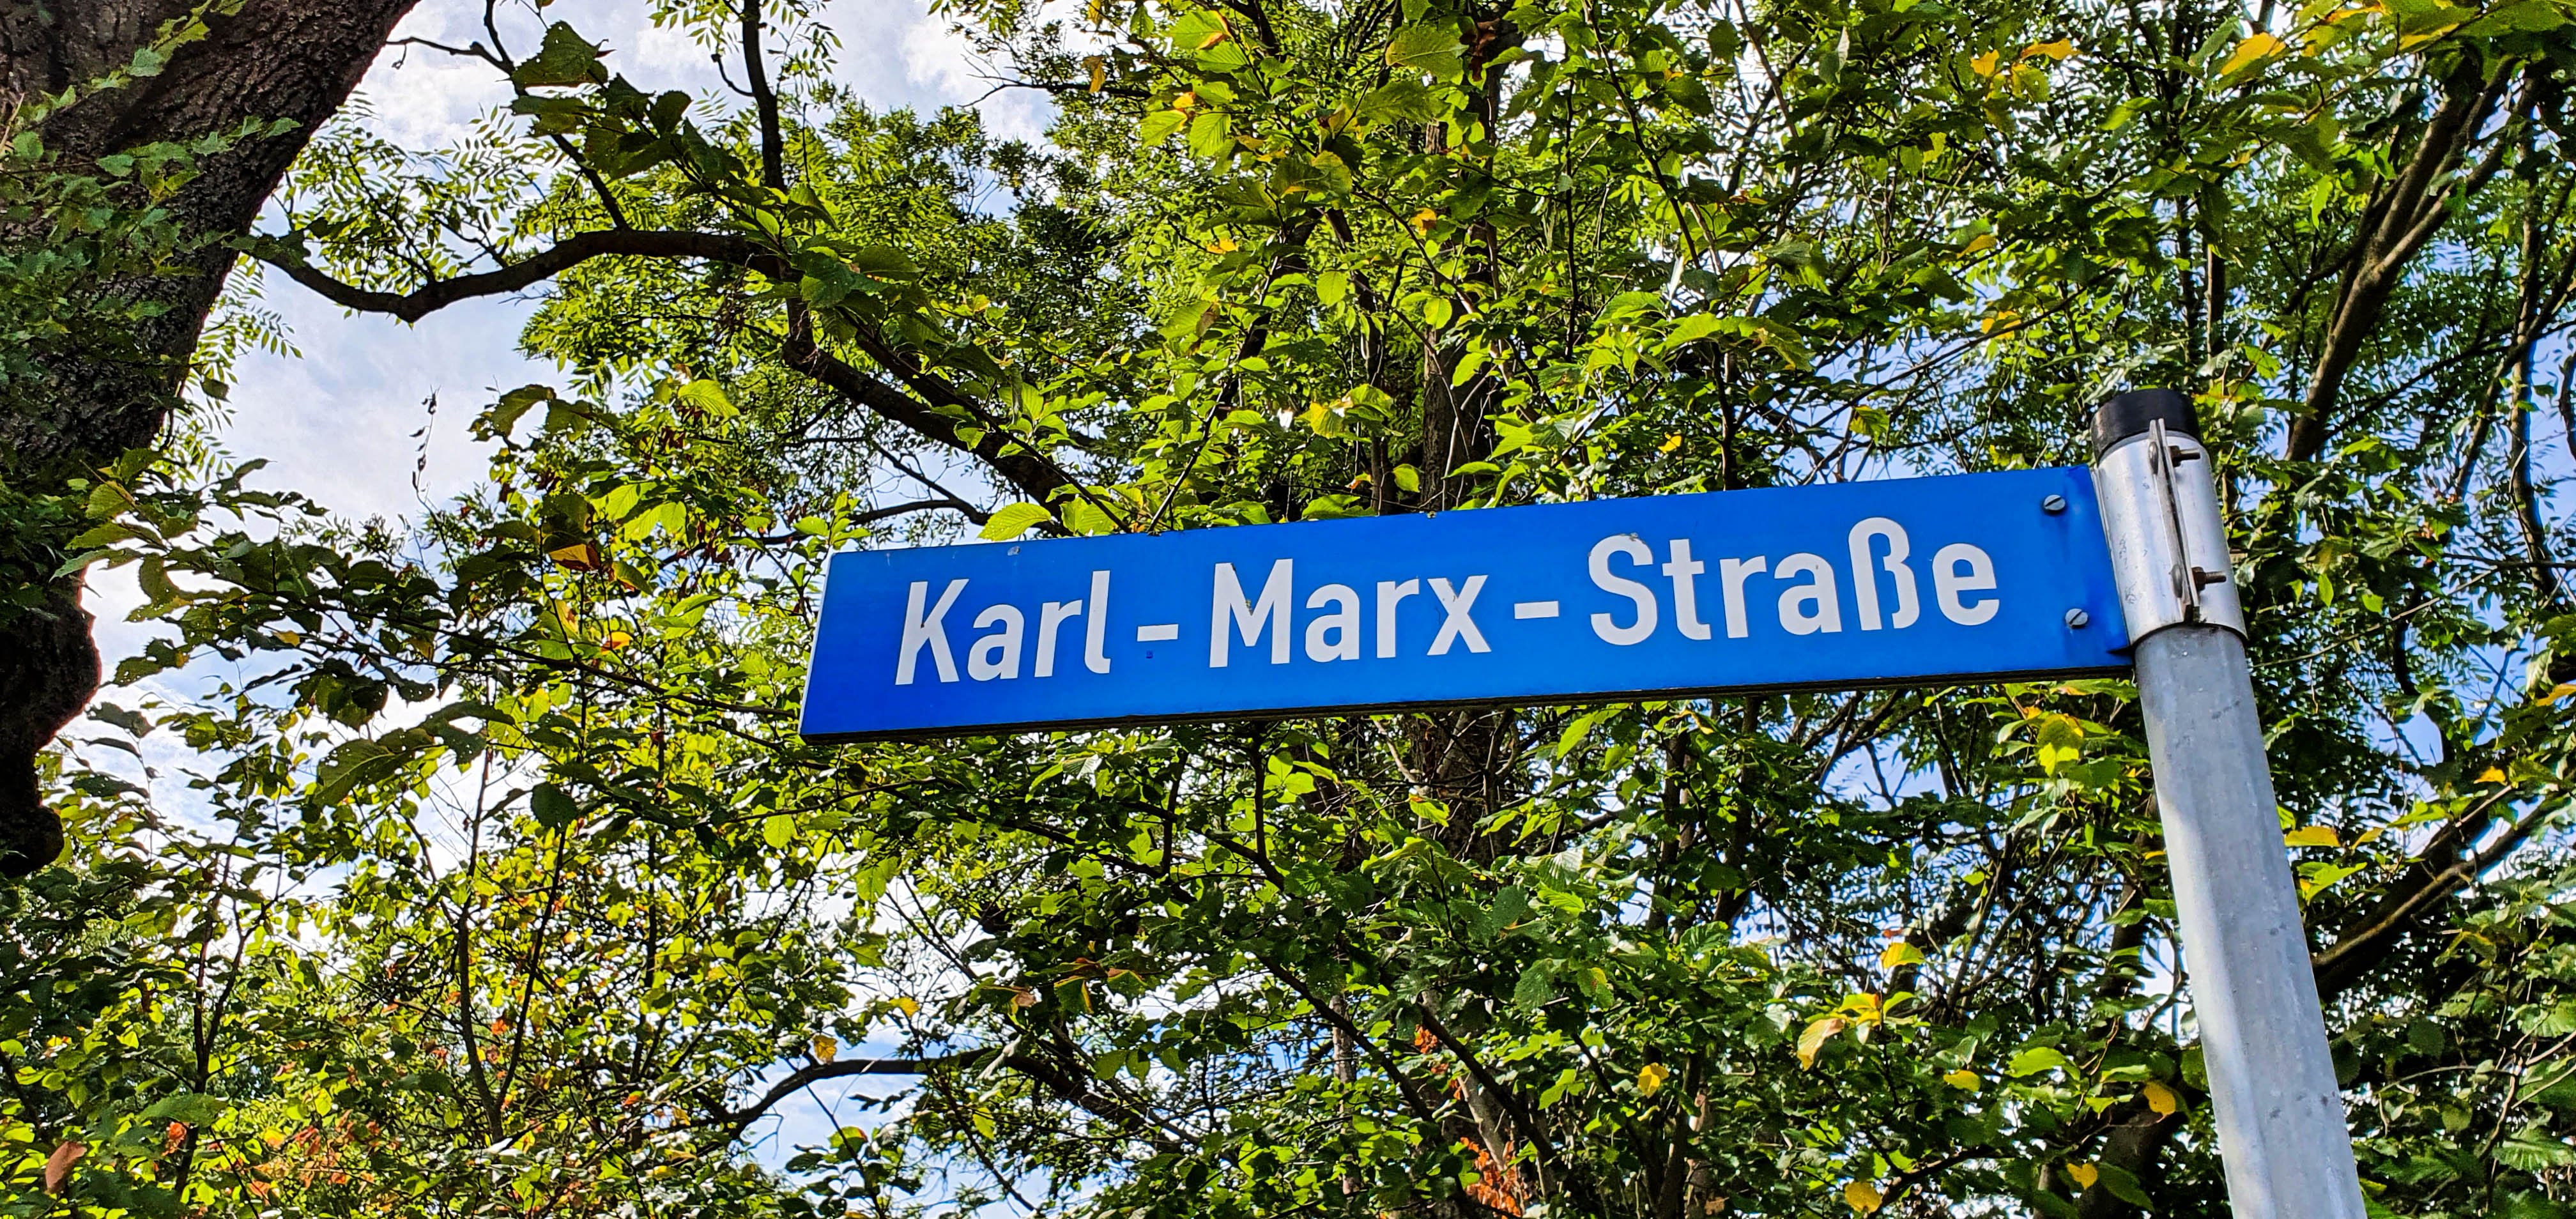 straatnamen met een DDR-verleden, zoals de Karl-Marx-strasse